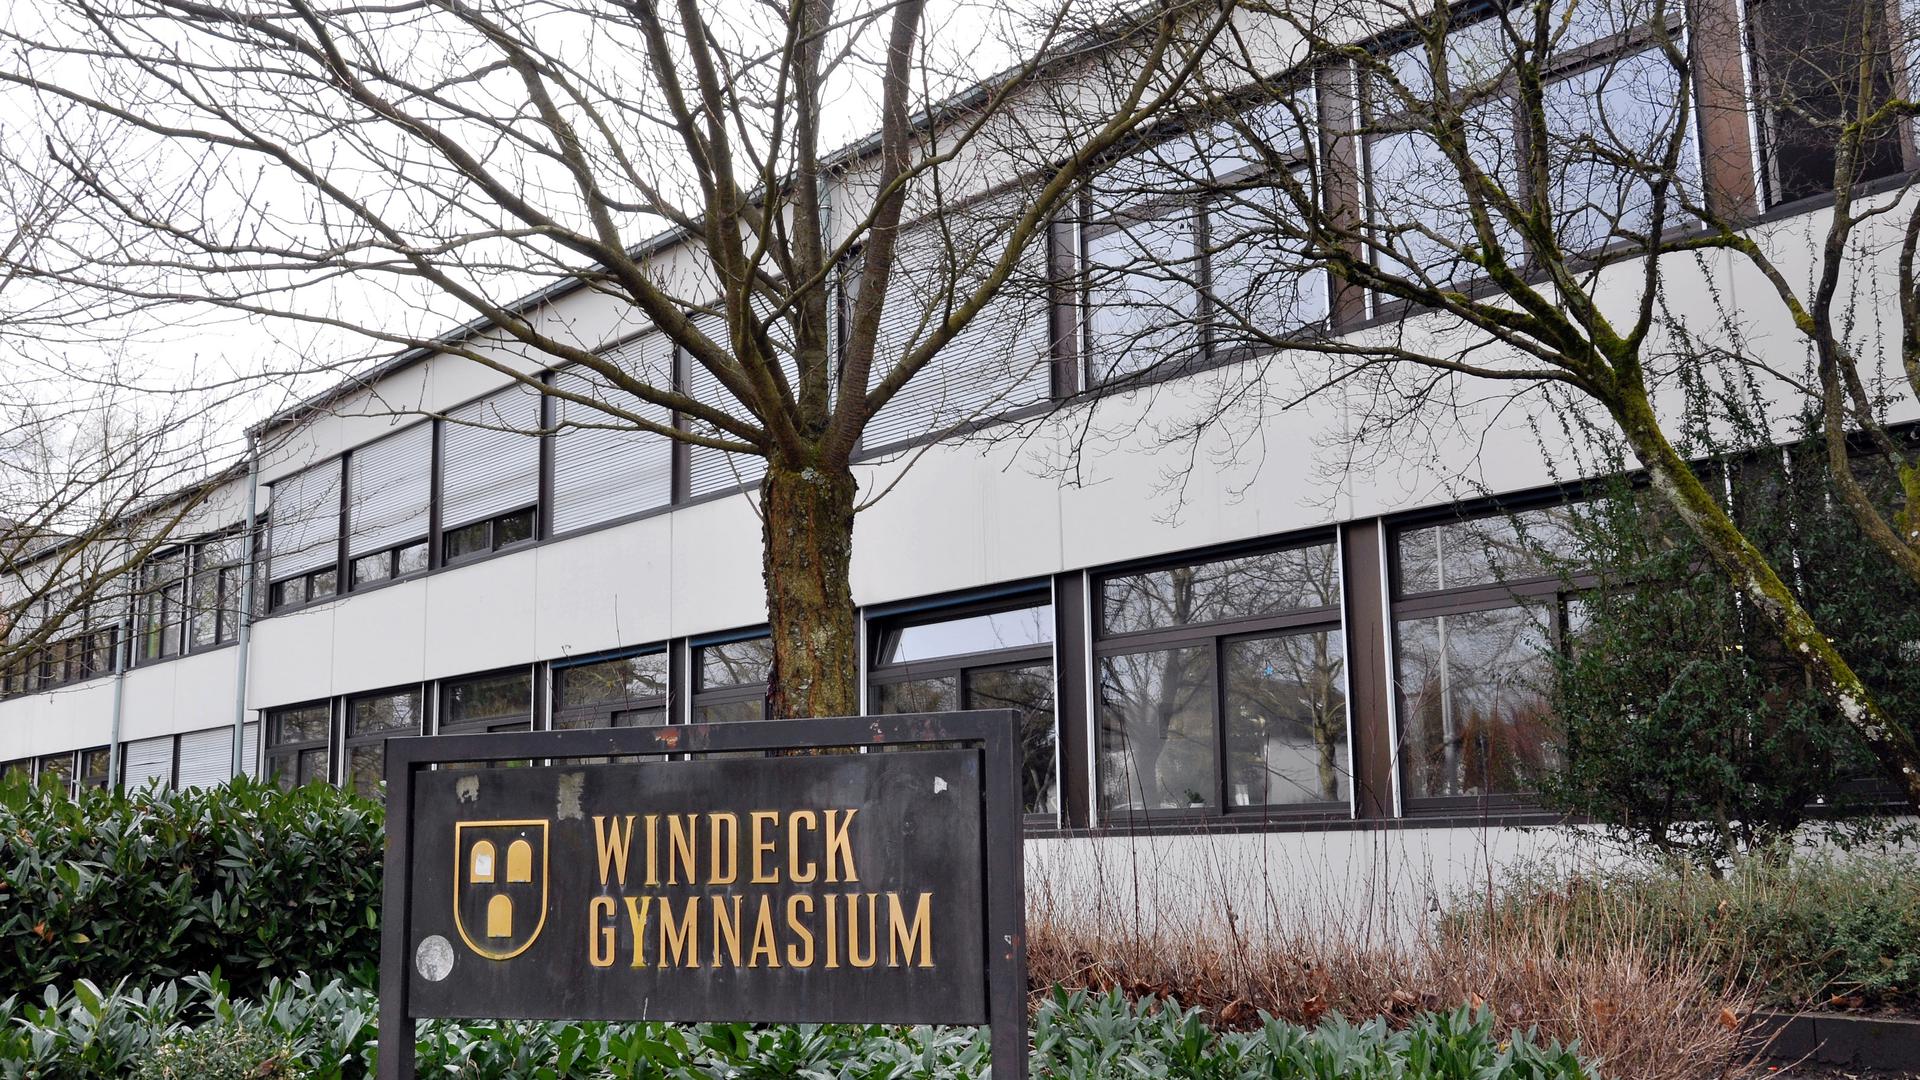 Windeck Gymnasium
Windeck-Gymnasium Bühl